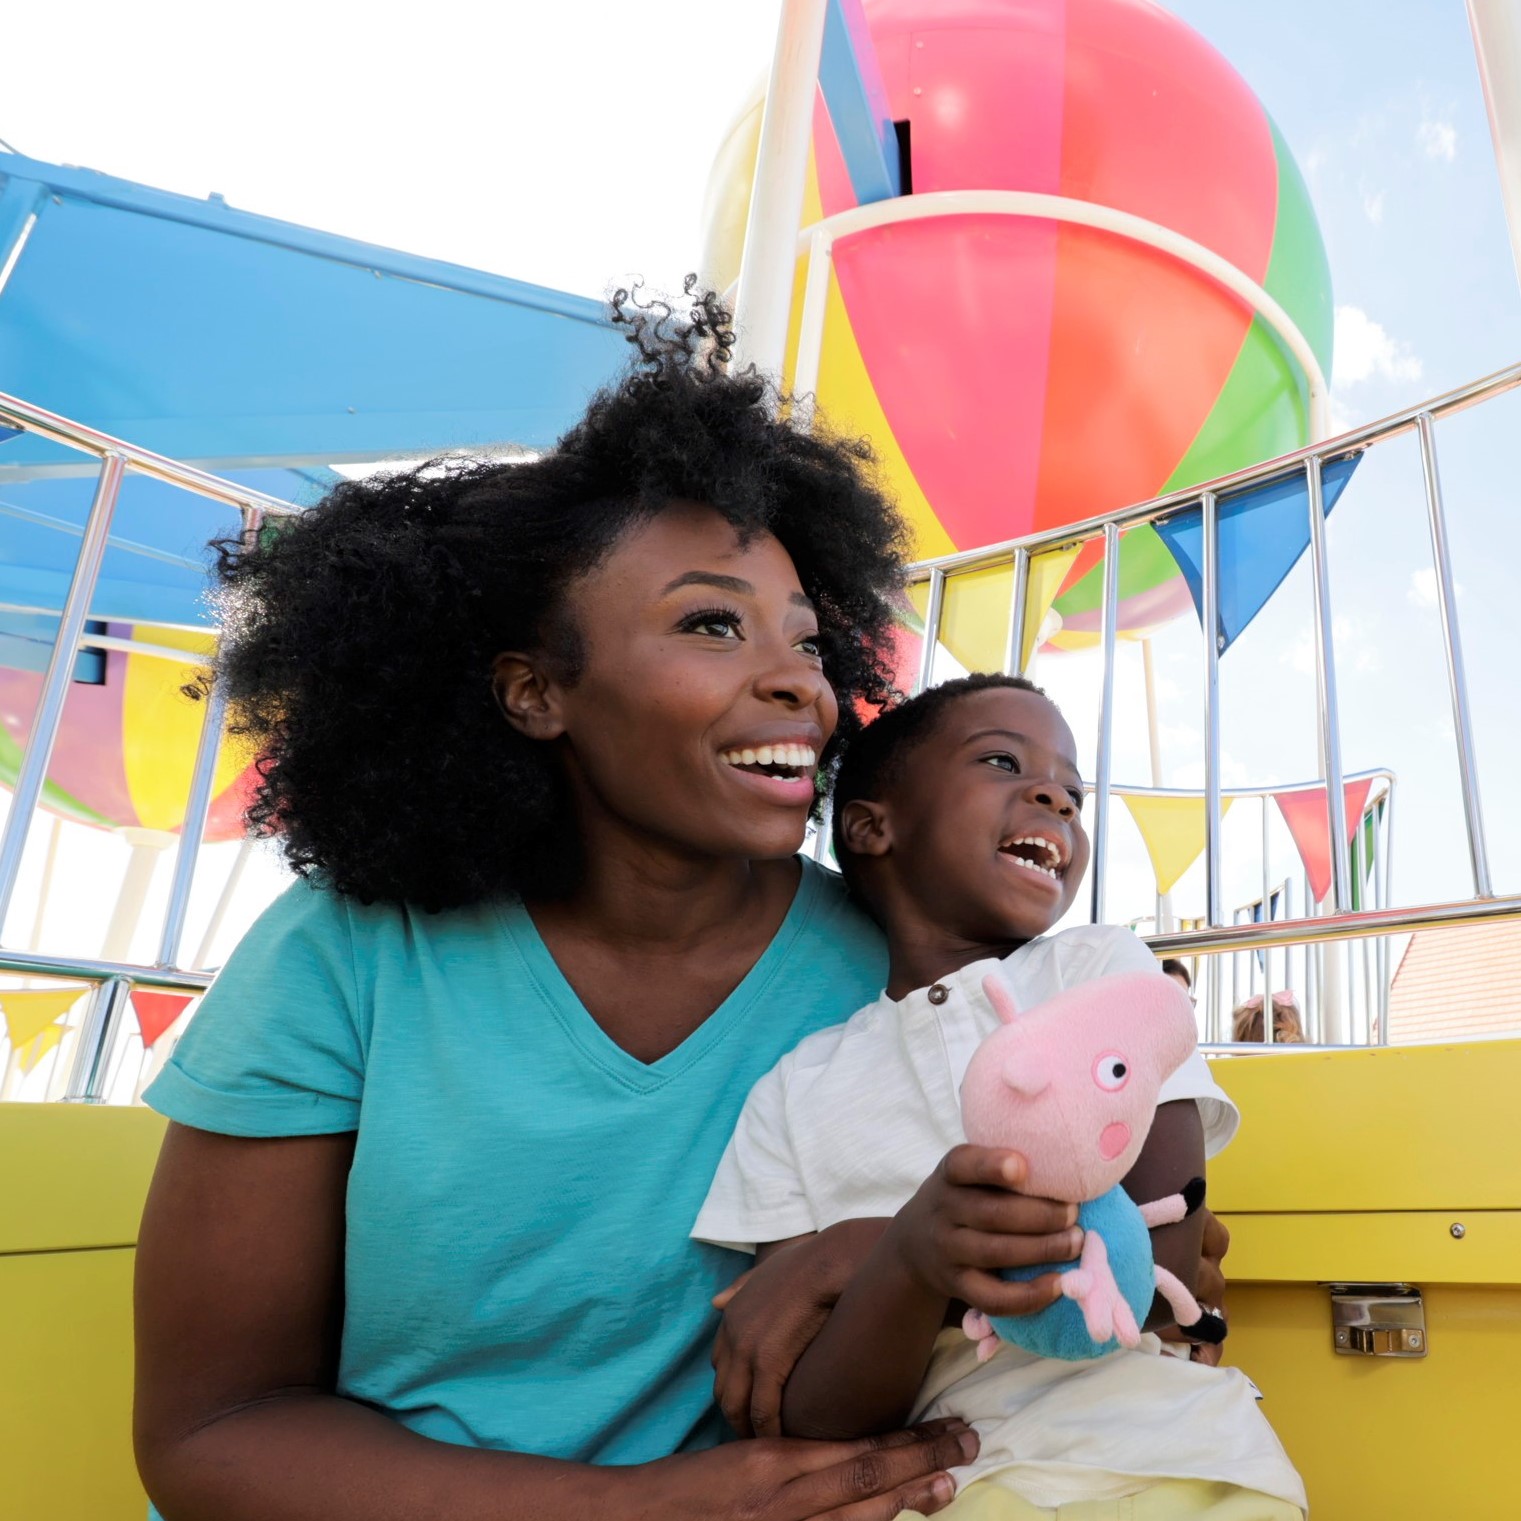 Balloon Ride at Peppa Pig Theme Park